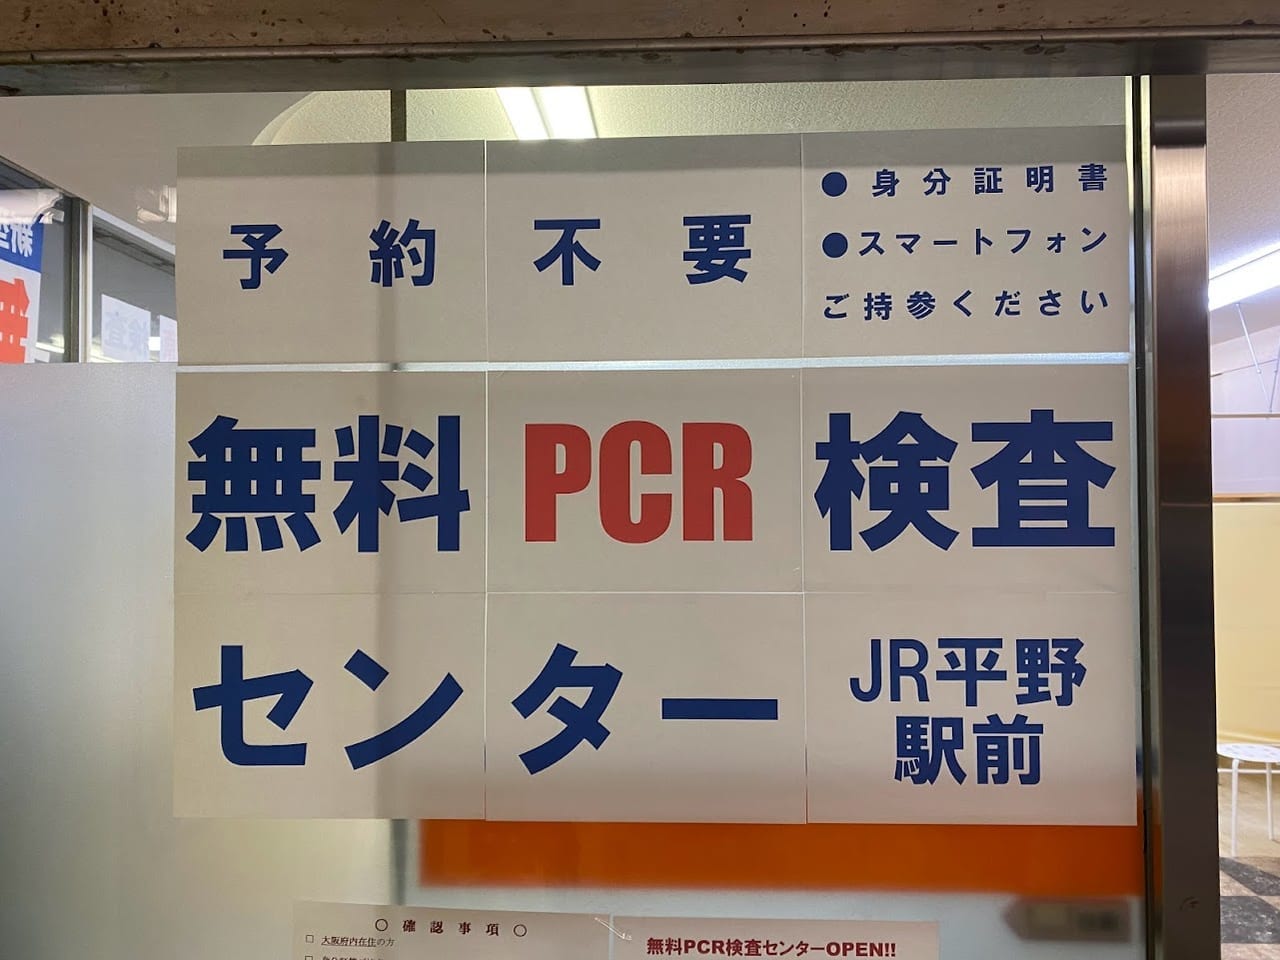 無料PCR検査センターJR平野駅前③